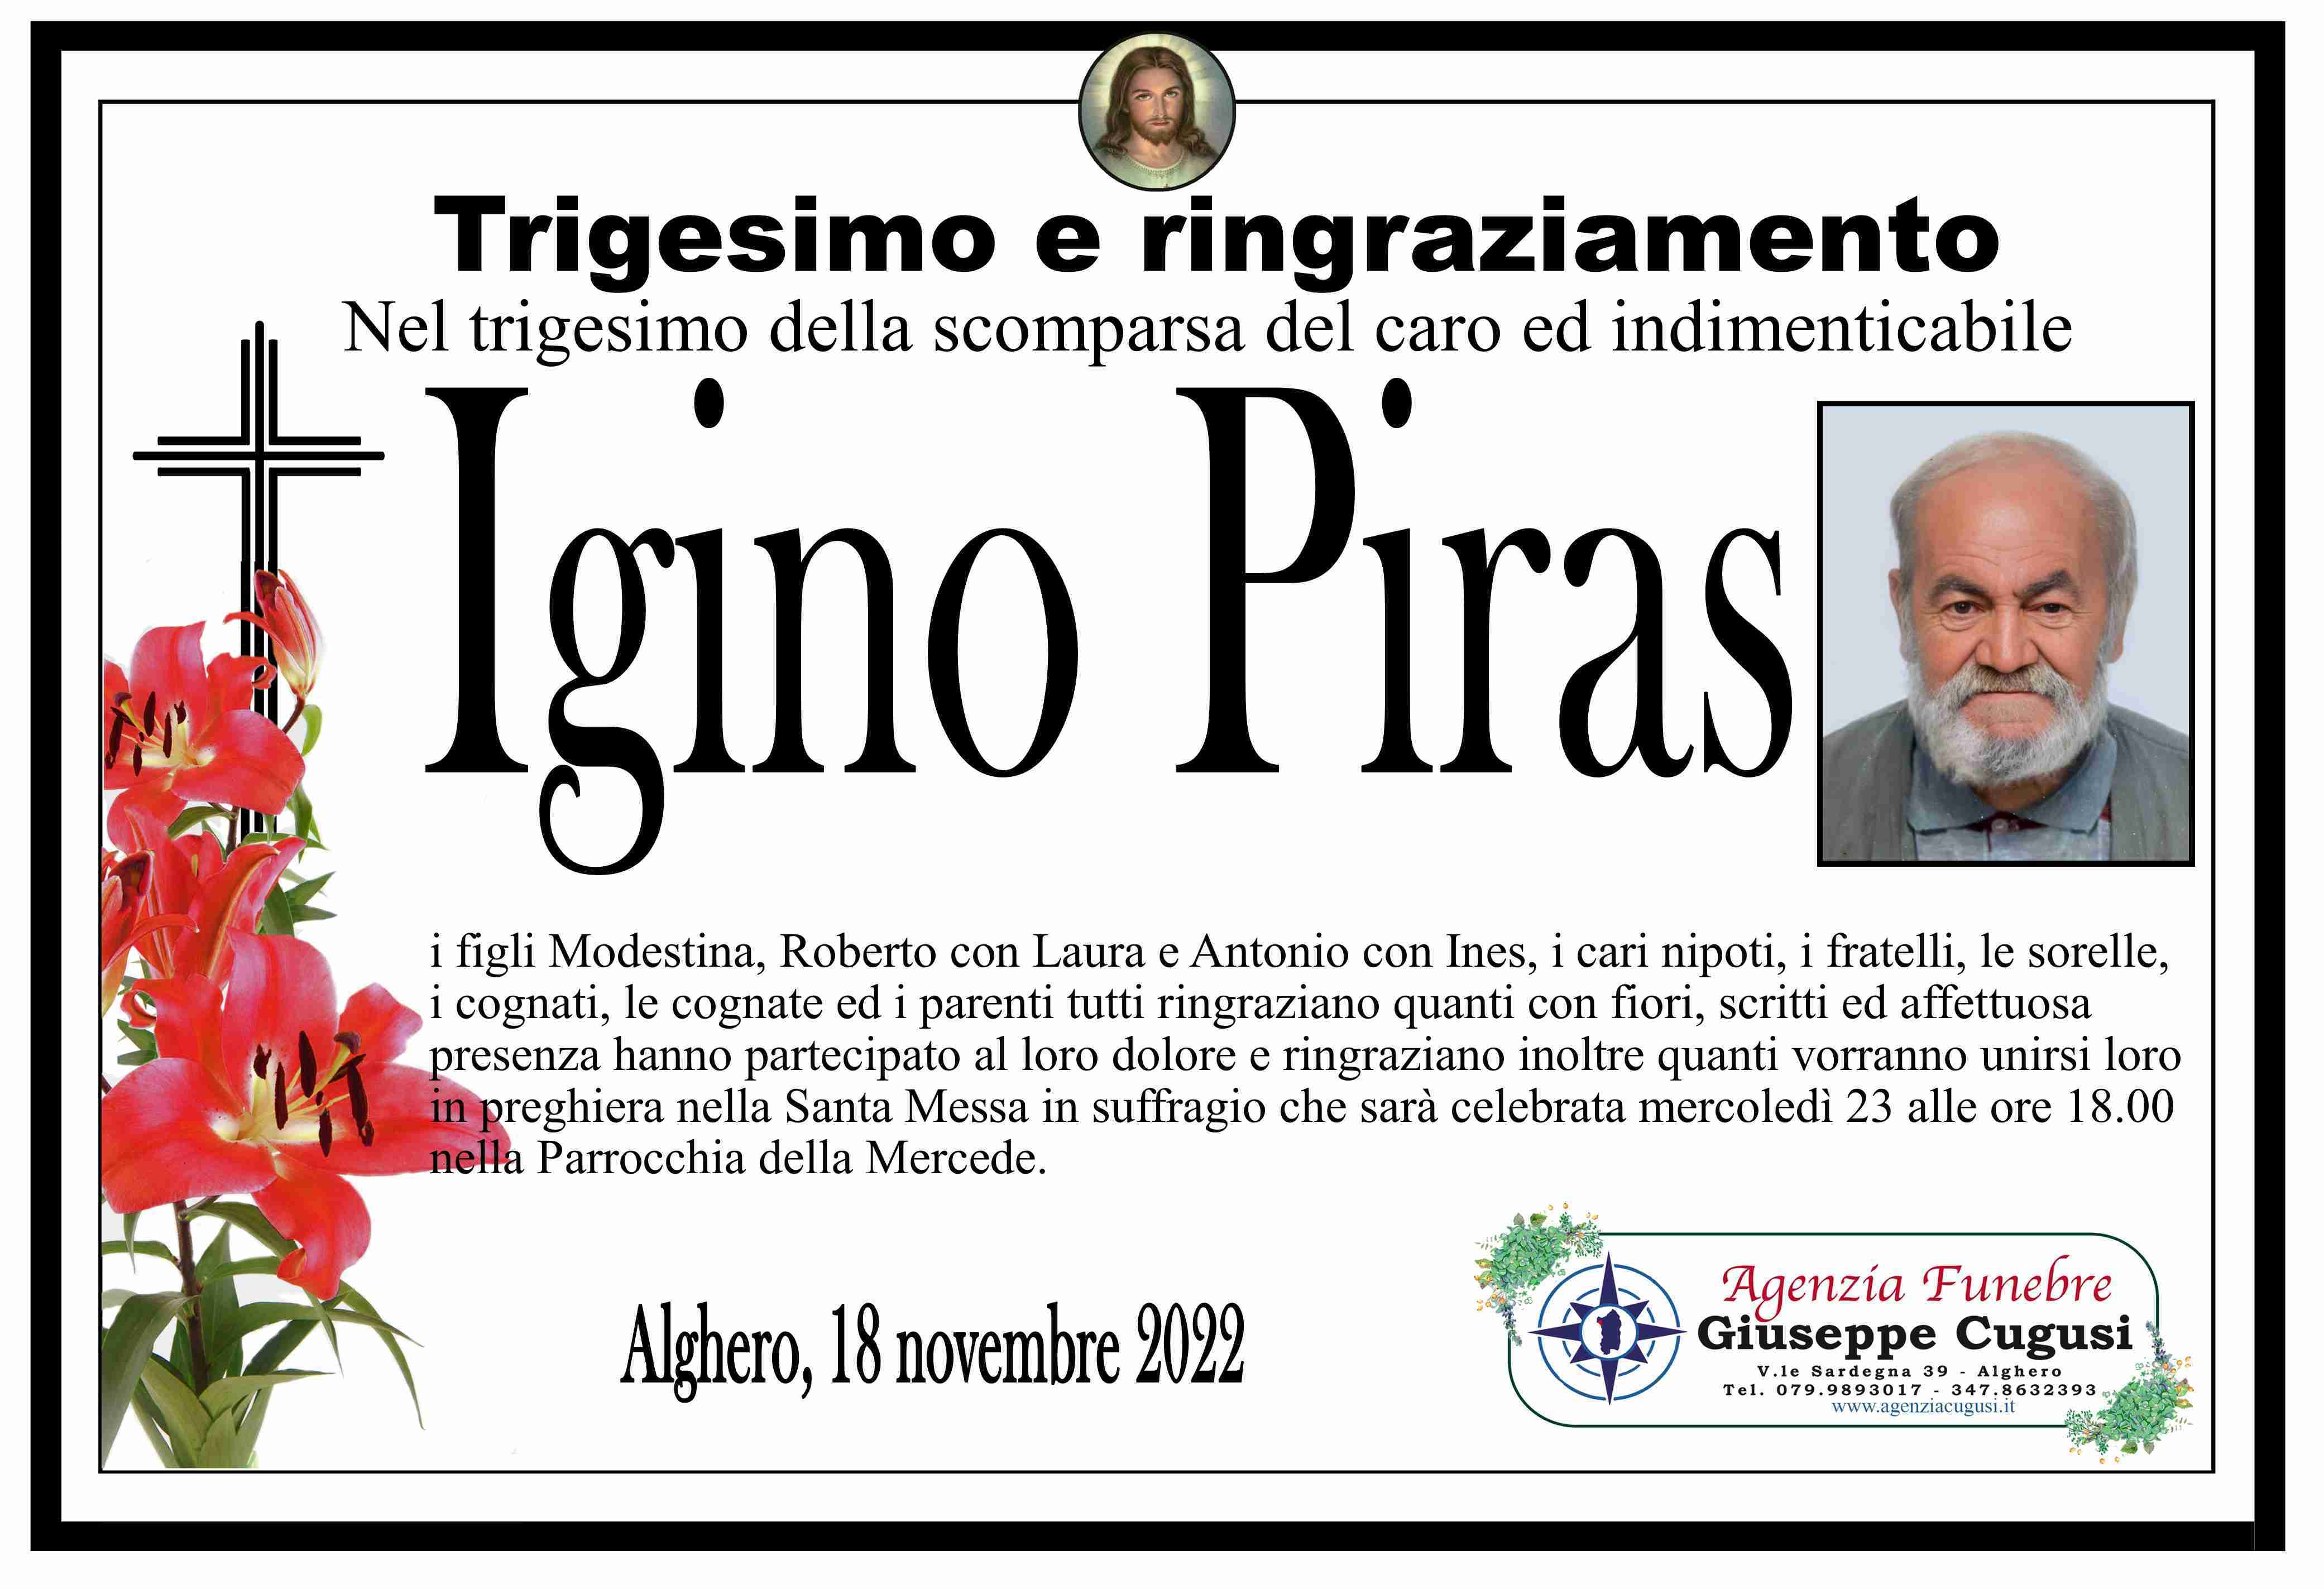 Igino Piras